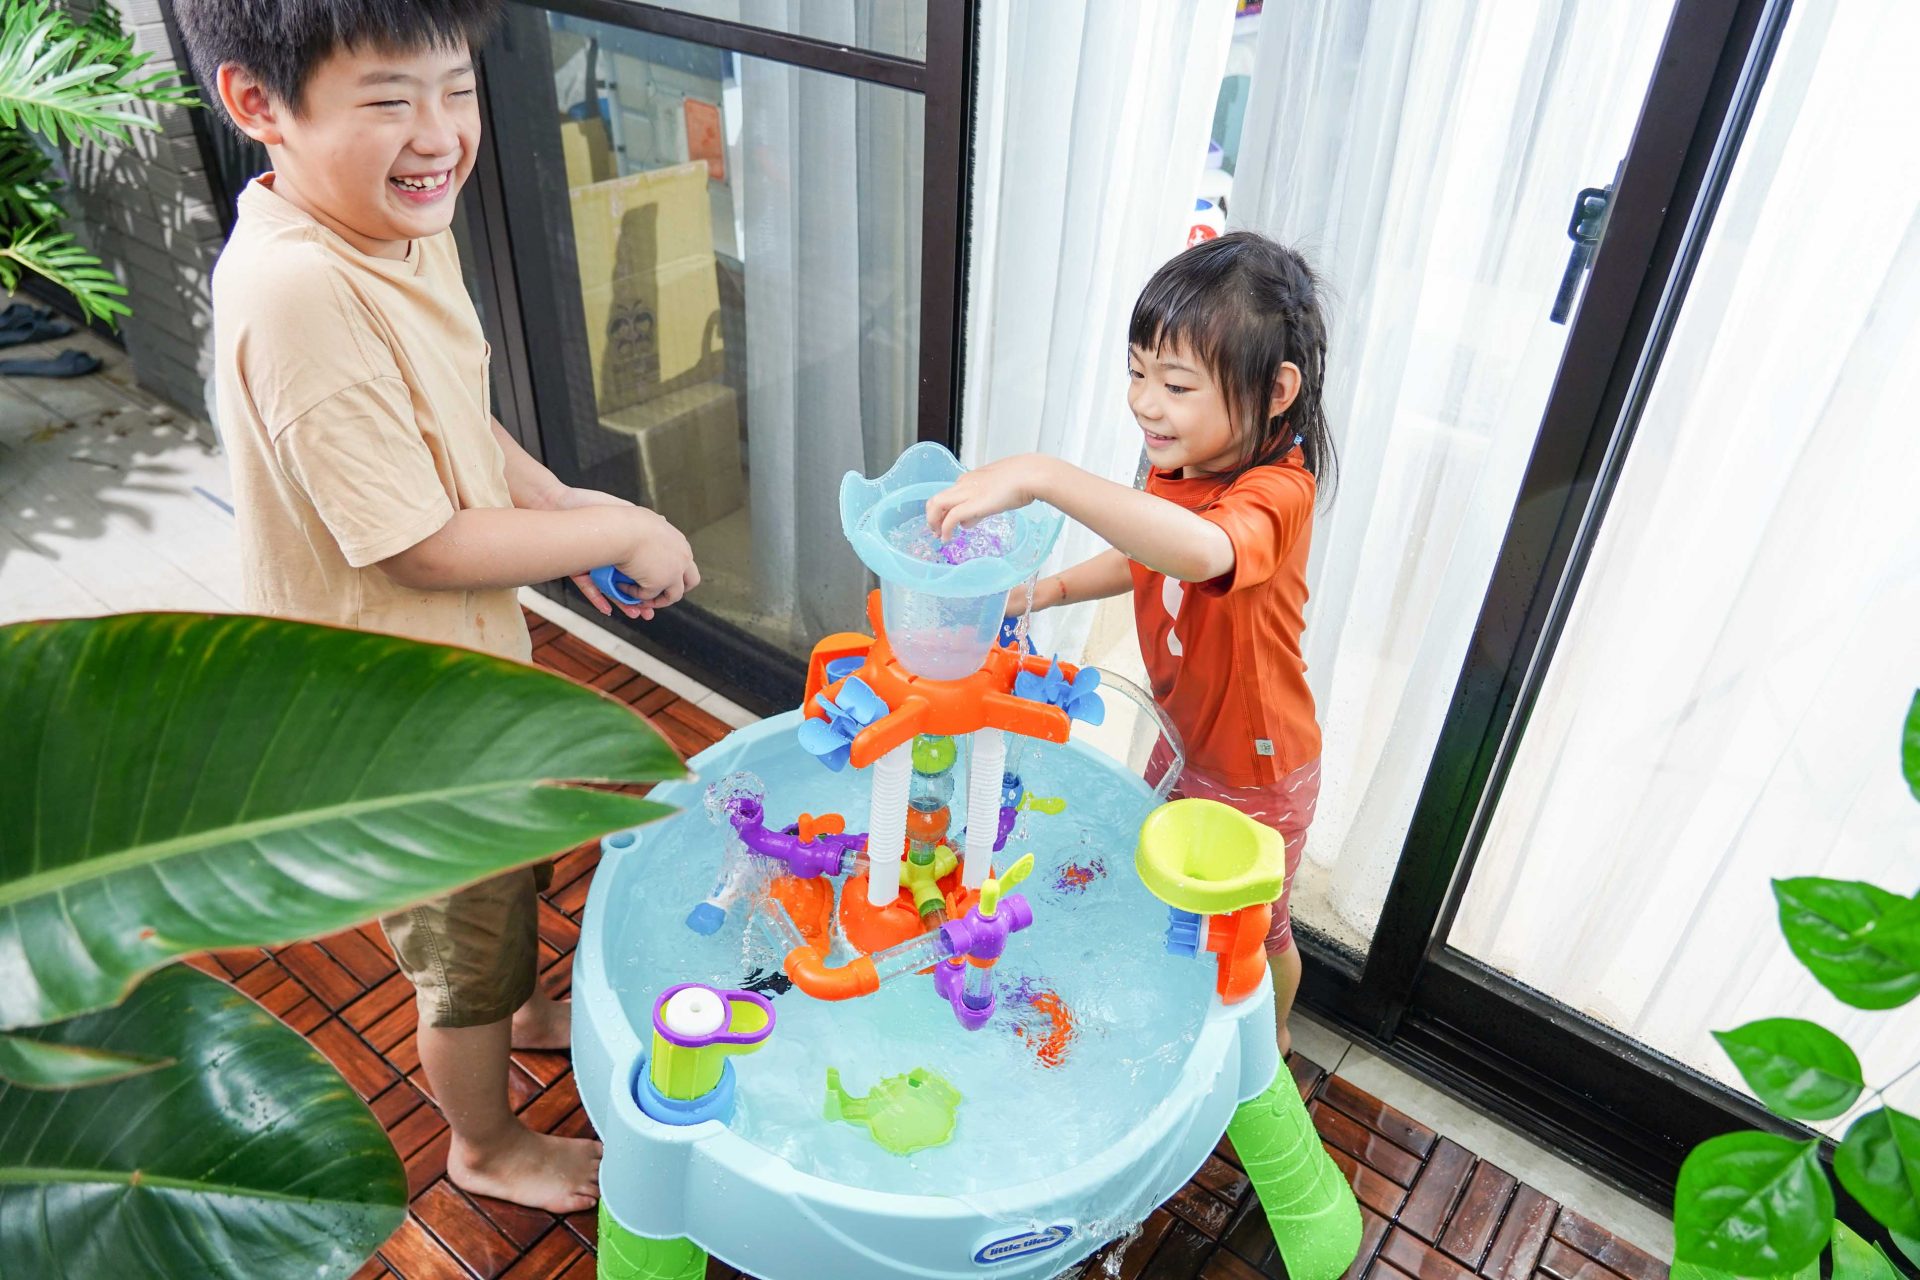 室內、戶外都好玩！【美國Little Tikes 感統體能。是內戲水桌。戶外玩具。角色扮演。小火車】